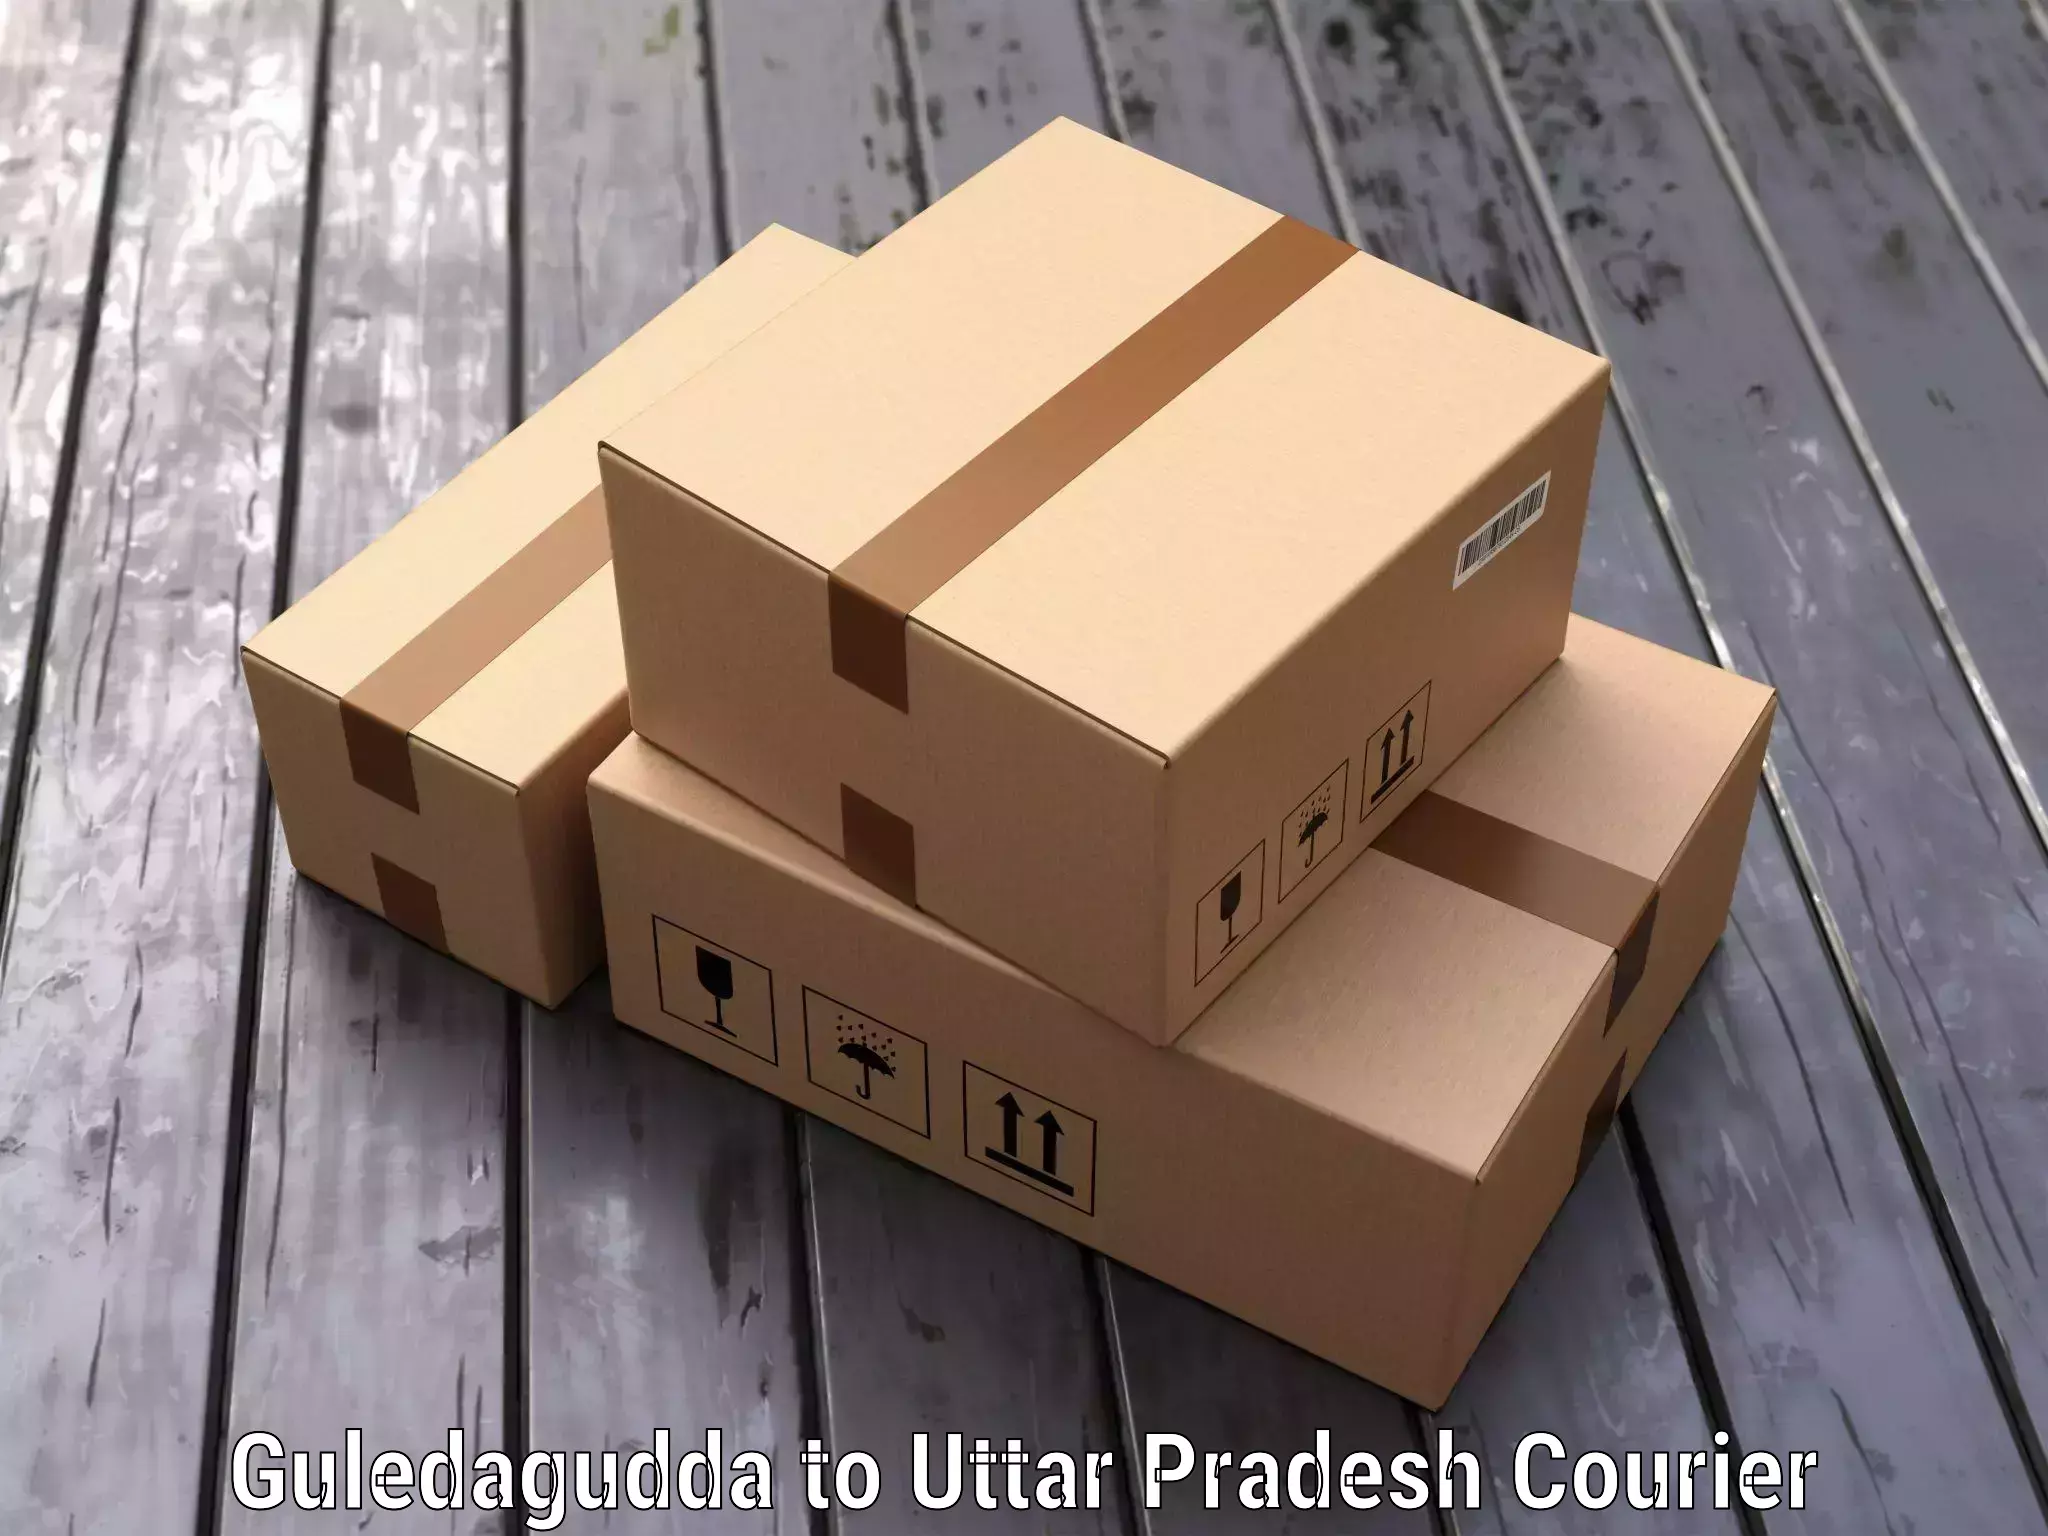 Luggage transfer service Guledagudda to Uttar Pradesh